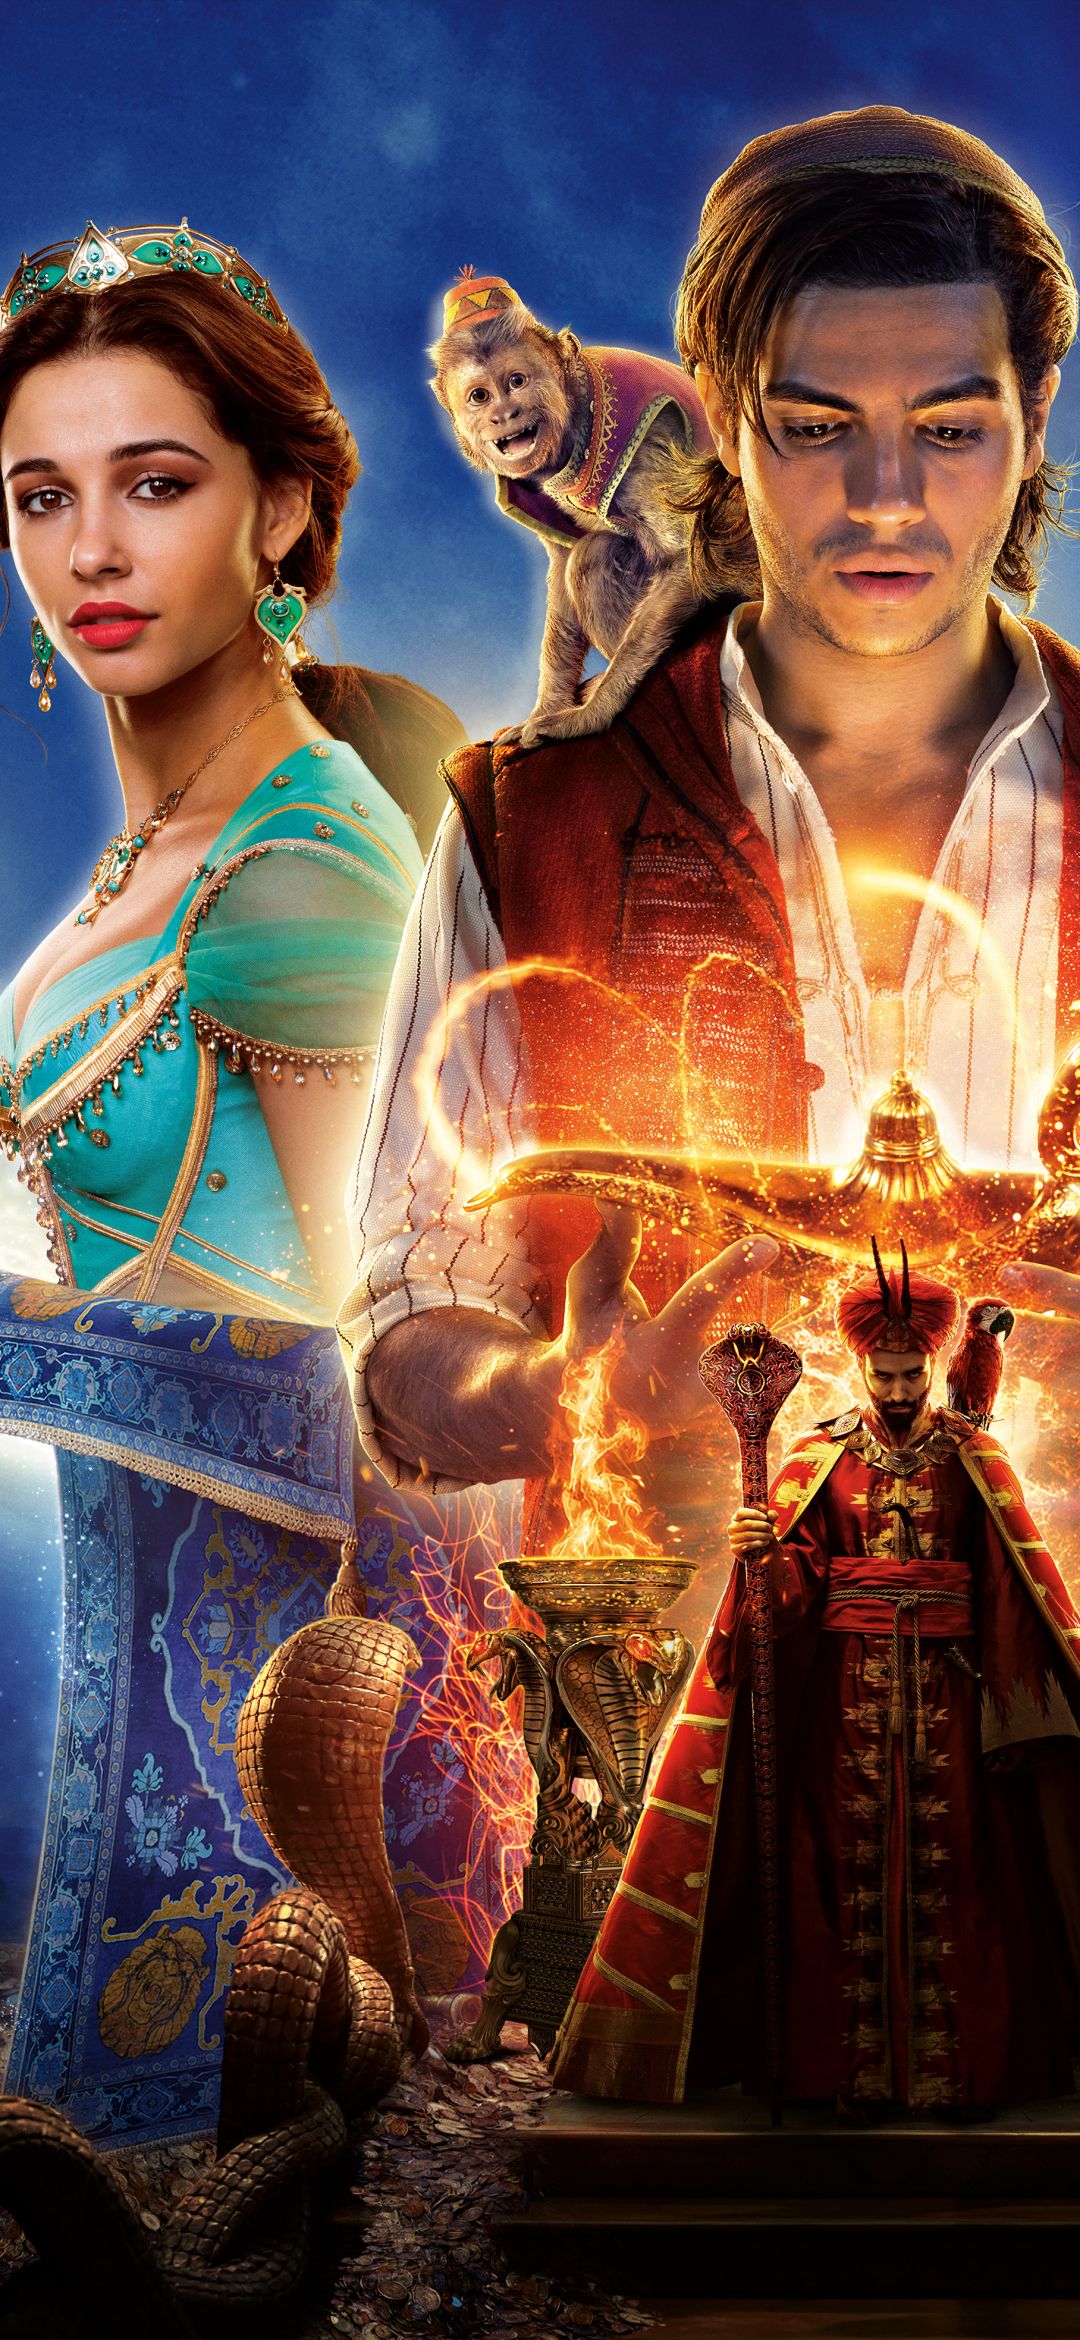 1080x2340 Película Aladdin (2019) (1080x2340) Fondo de pantalla de Aladdin  2019, Películas - Todo fondos